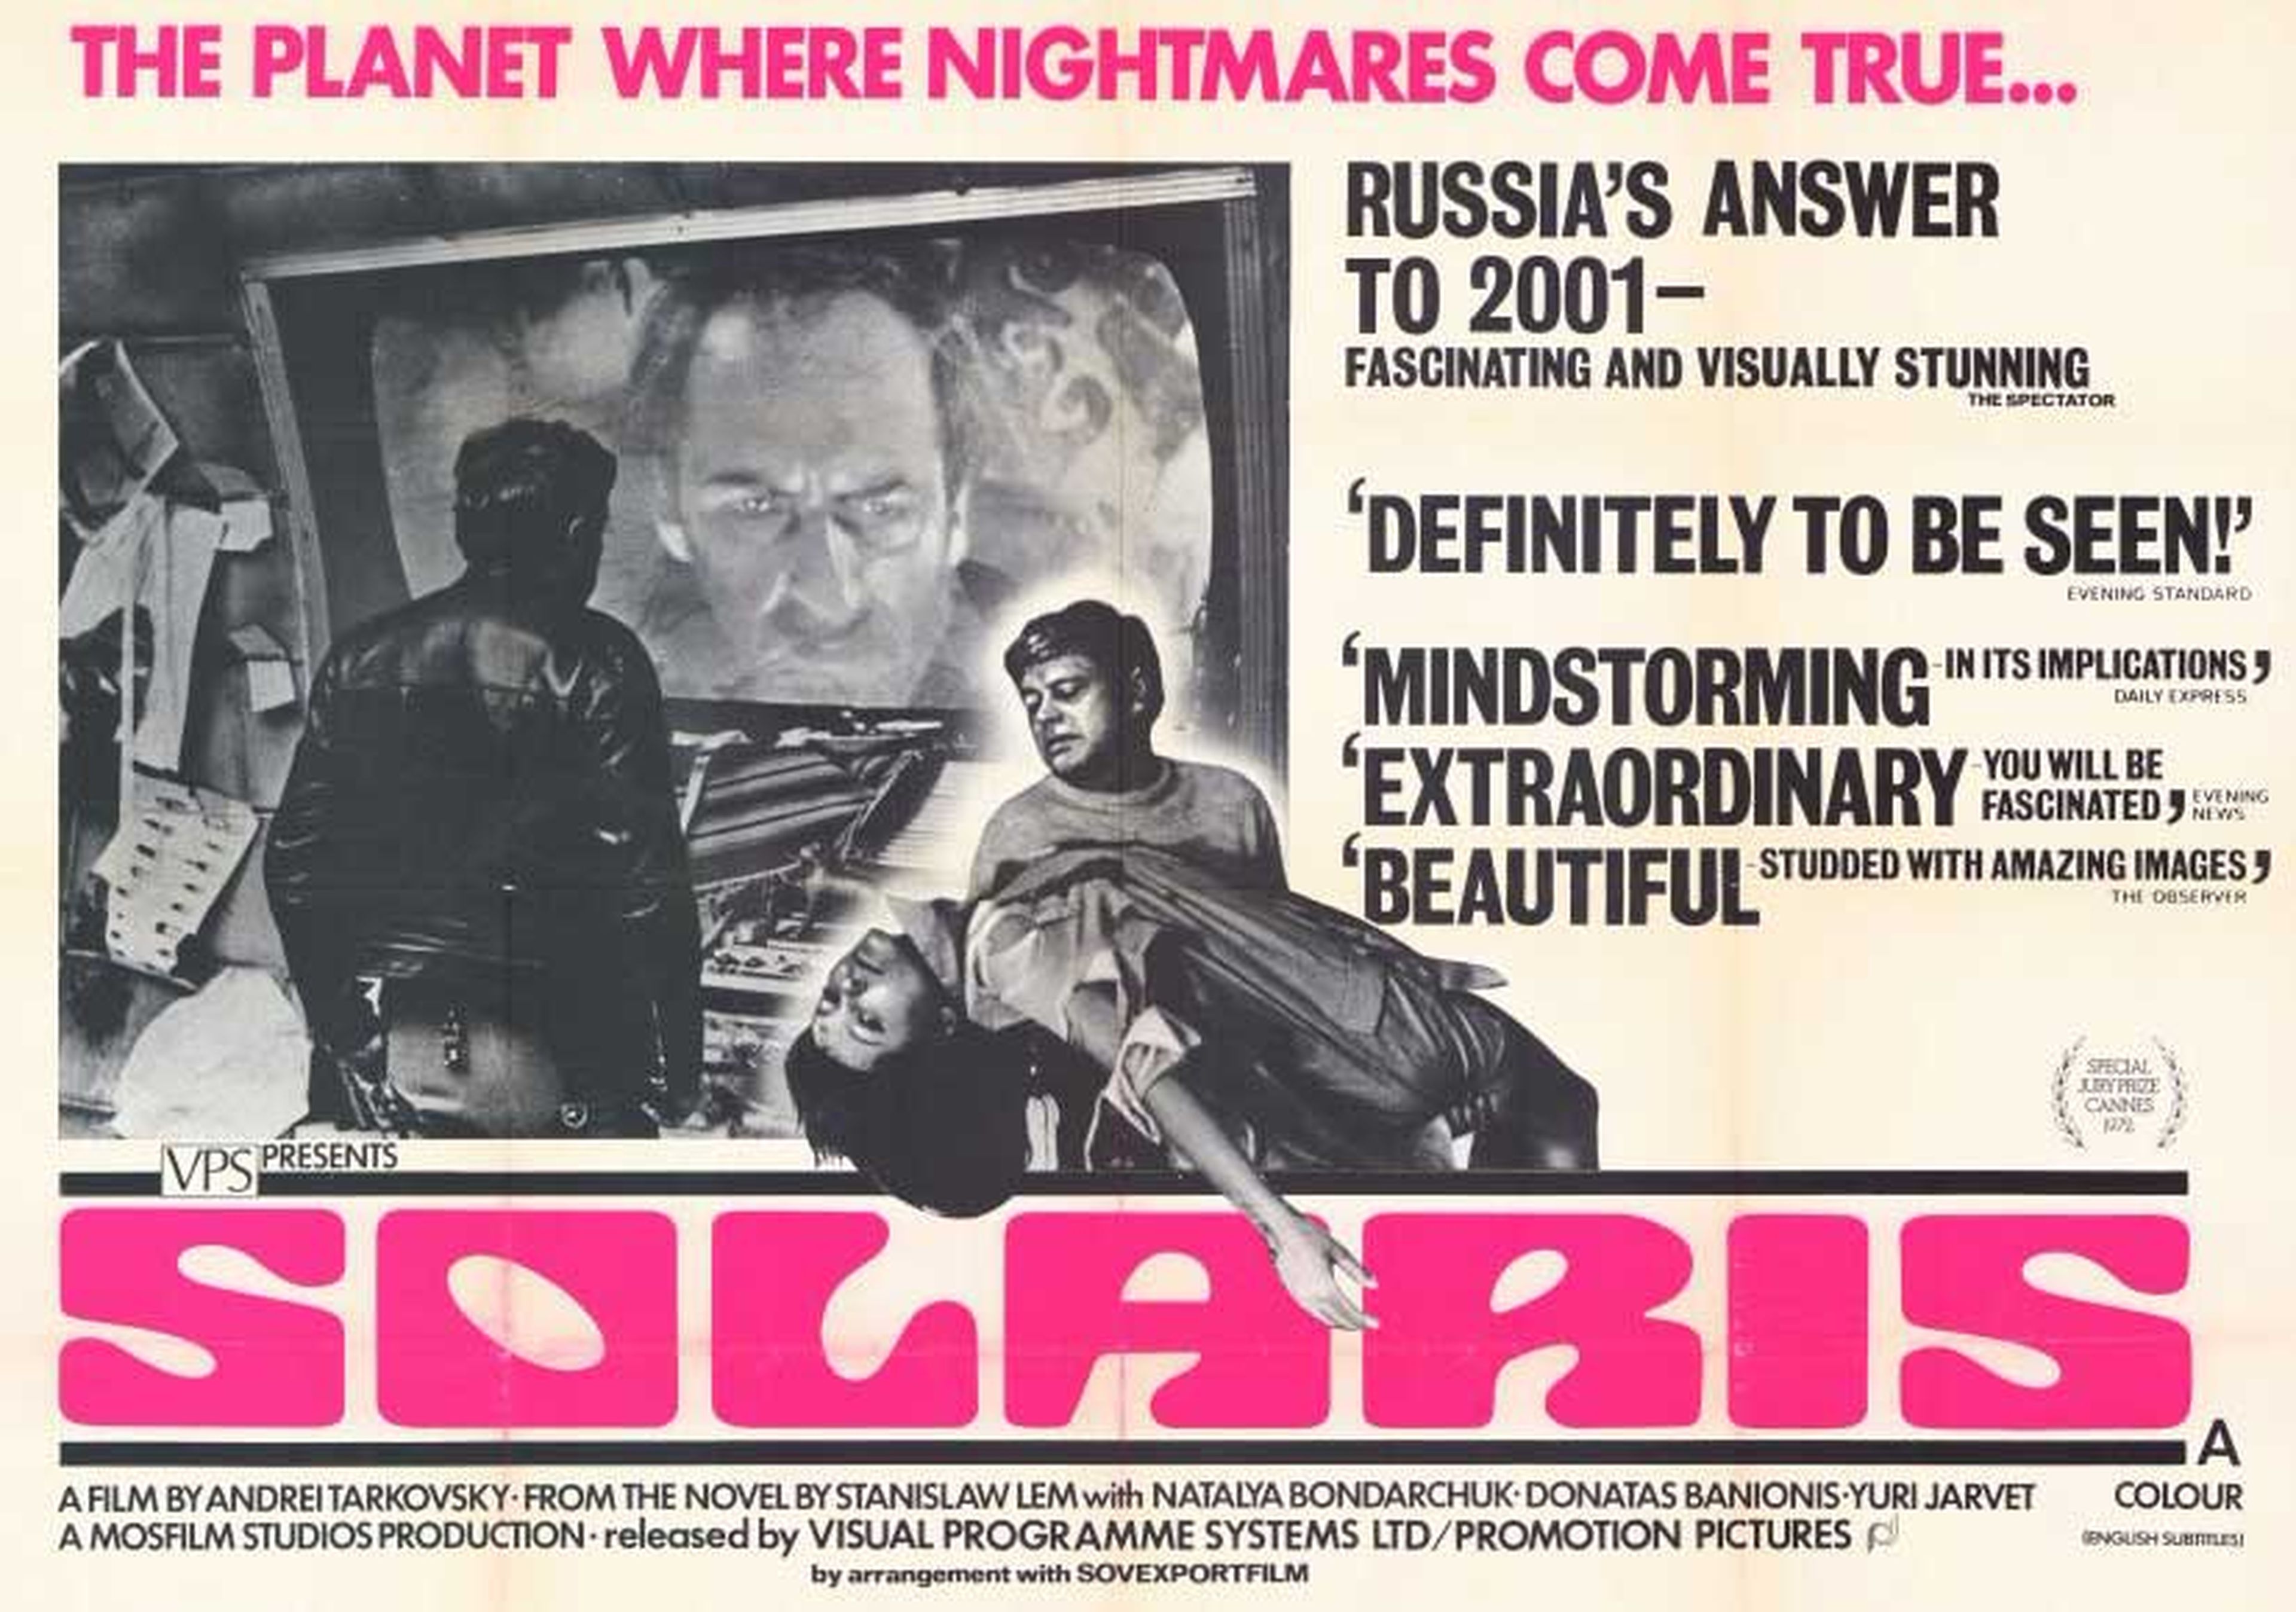 15. Solaris (1972)